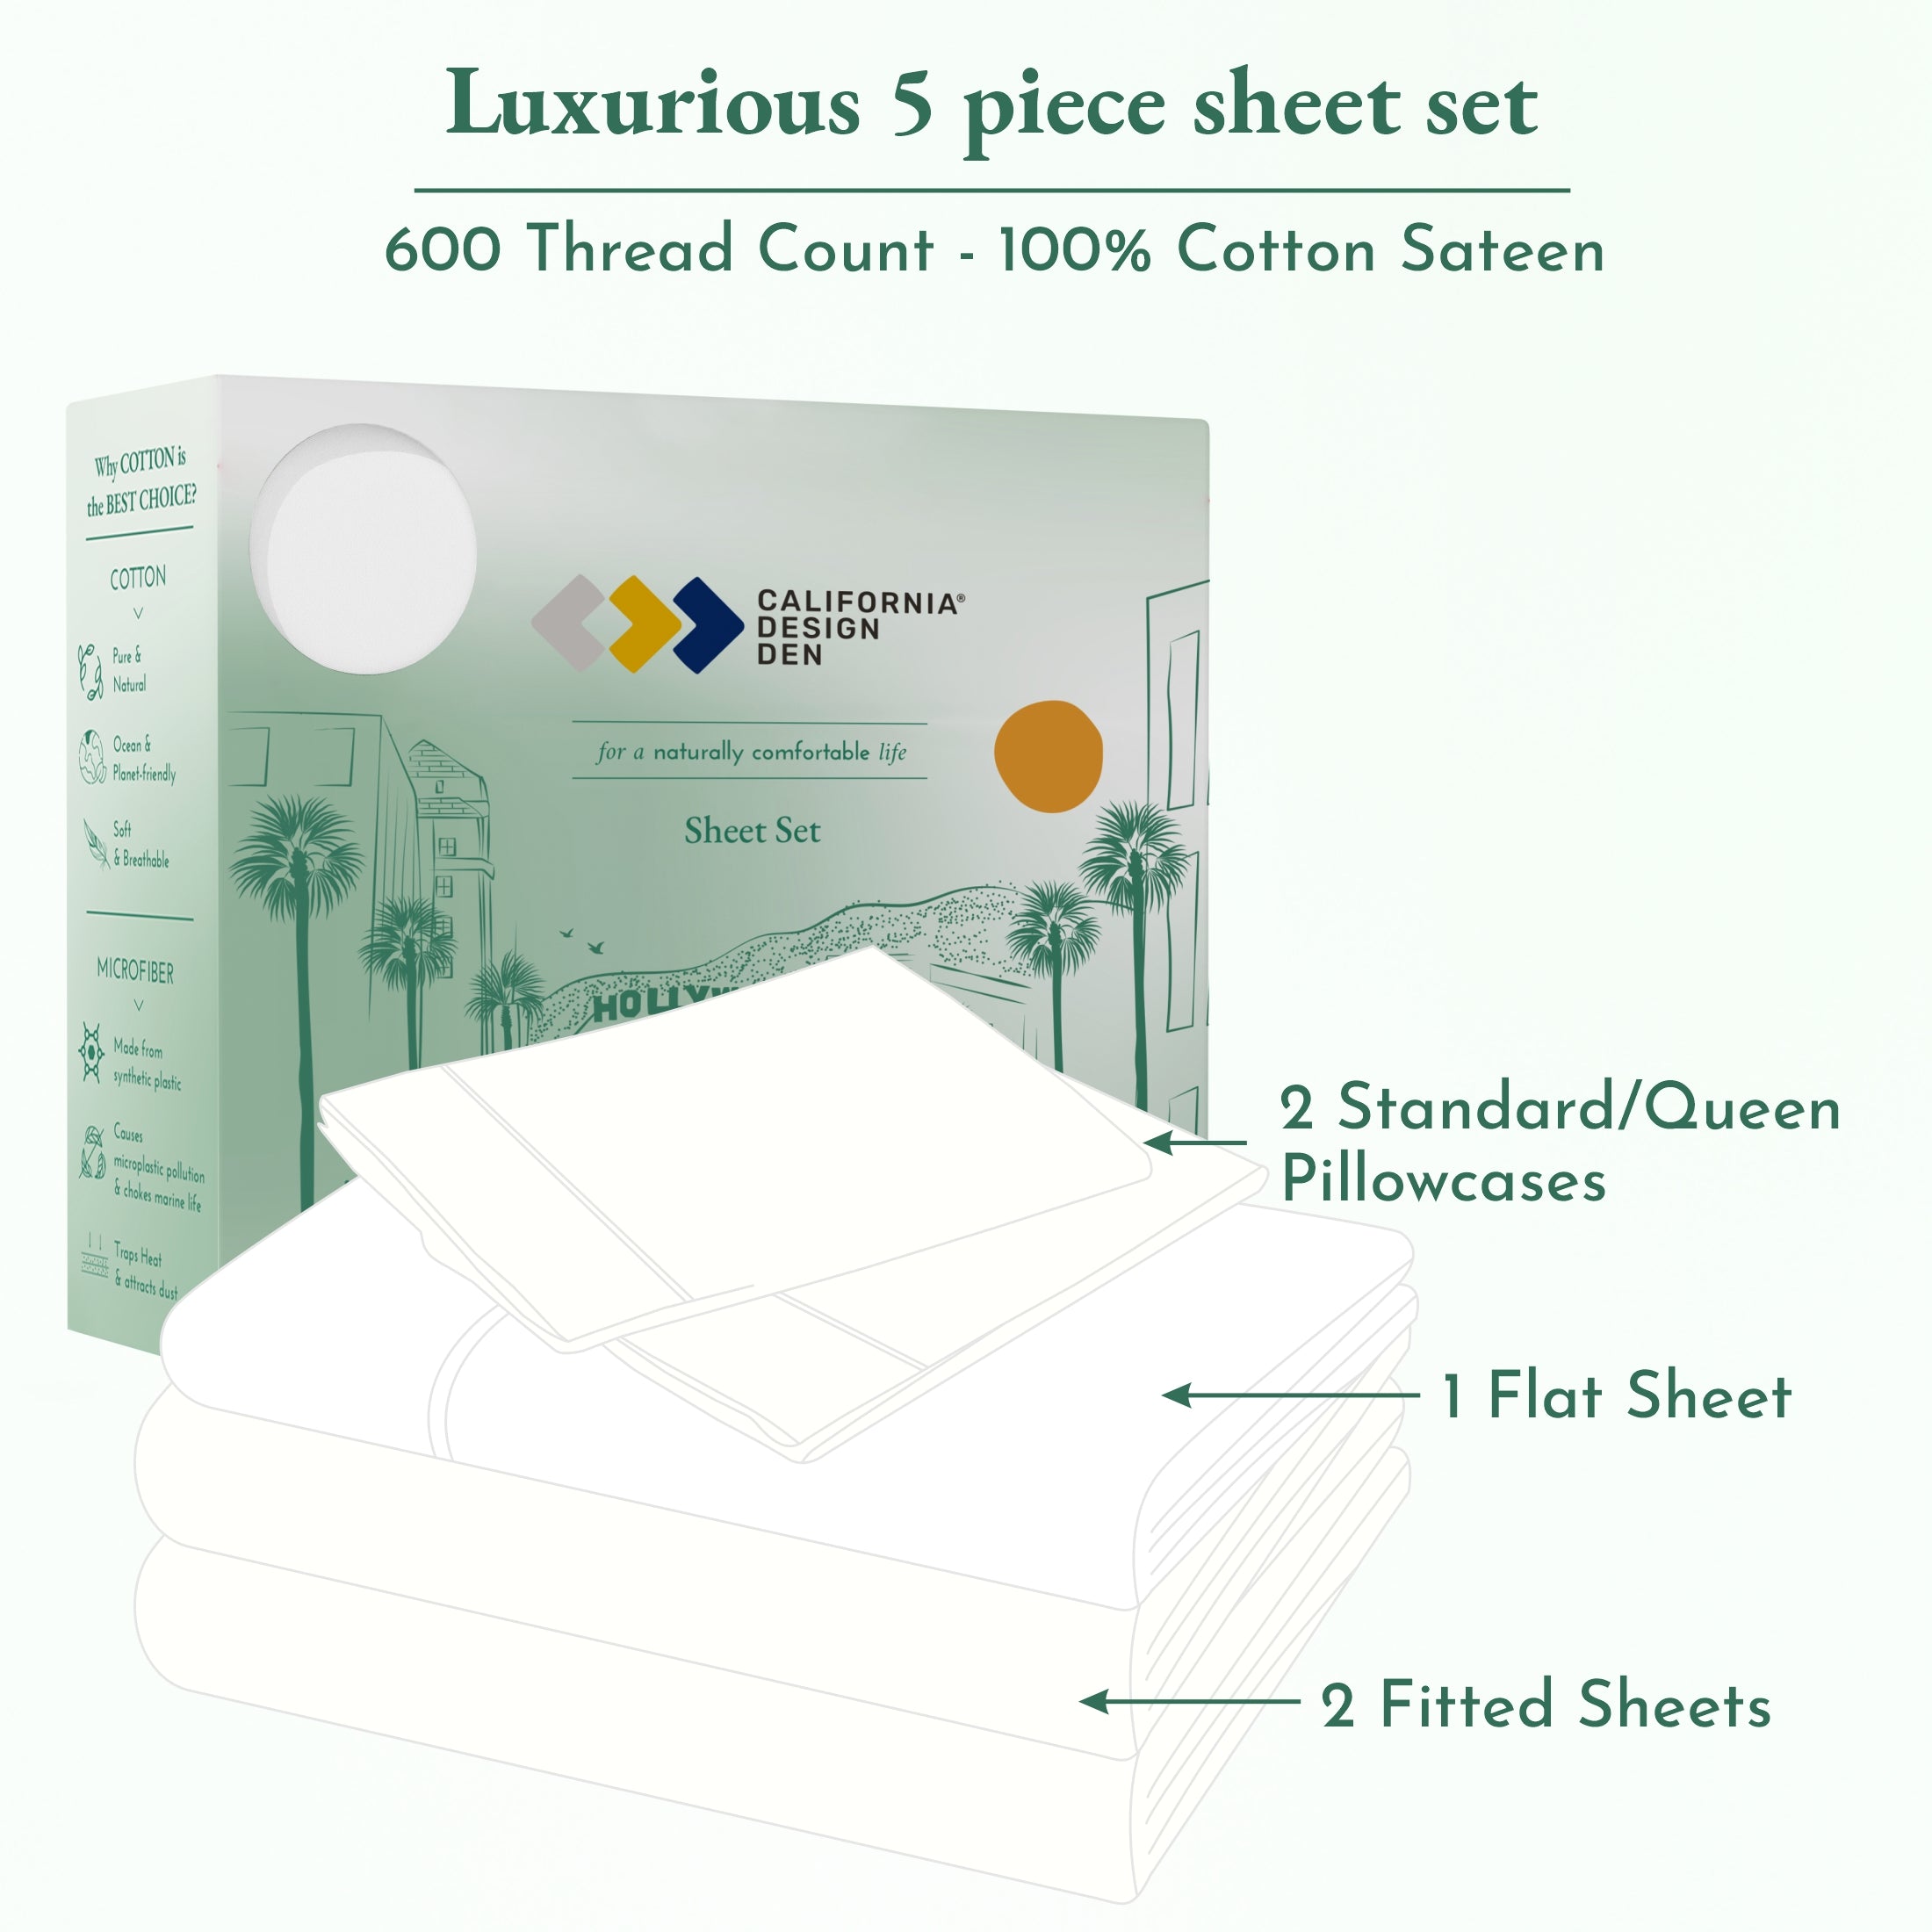 Luxe Smooth Sateen Solid Sheet Set - California Design Den